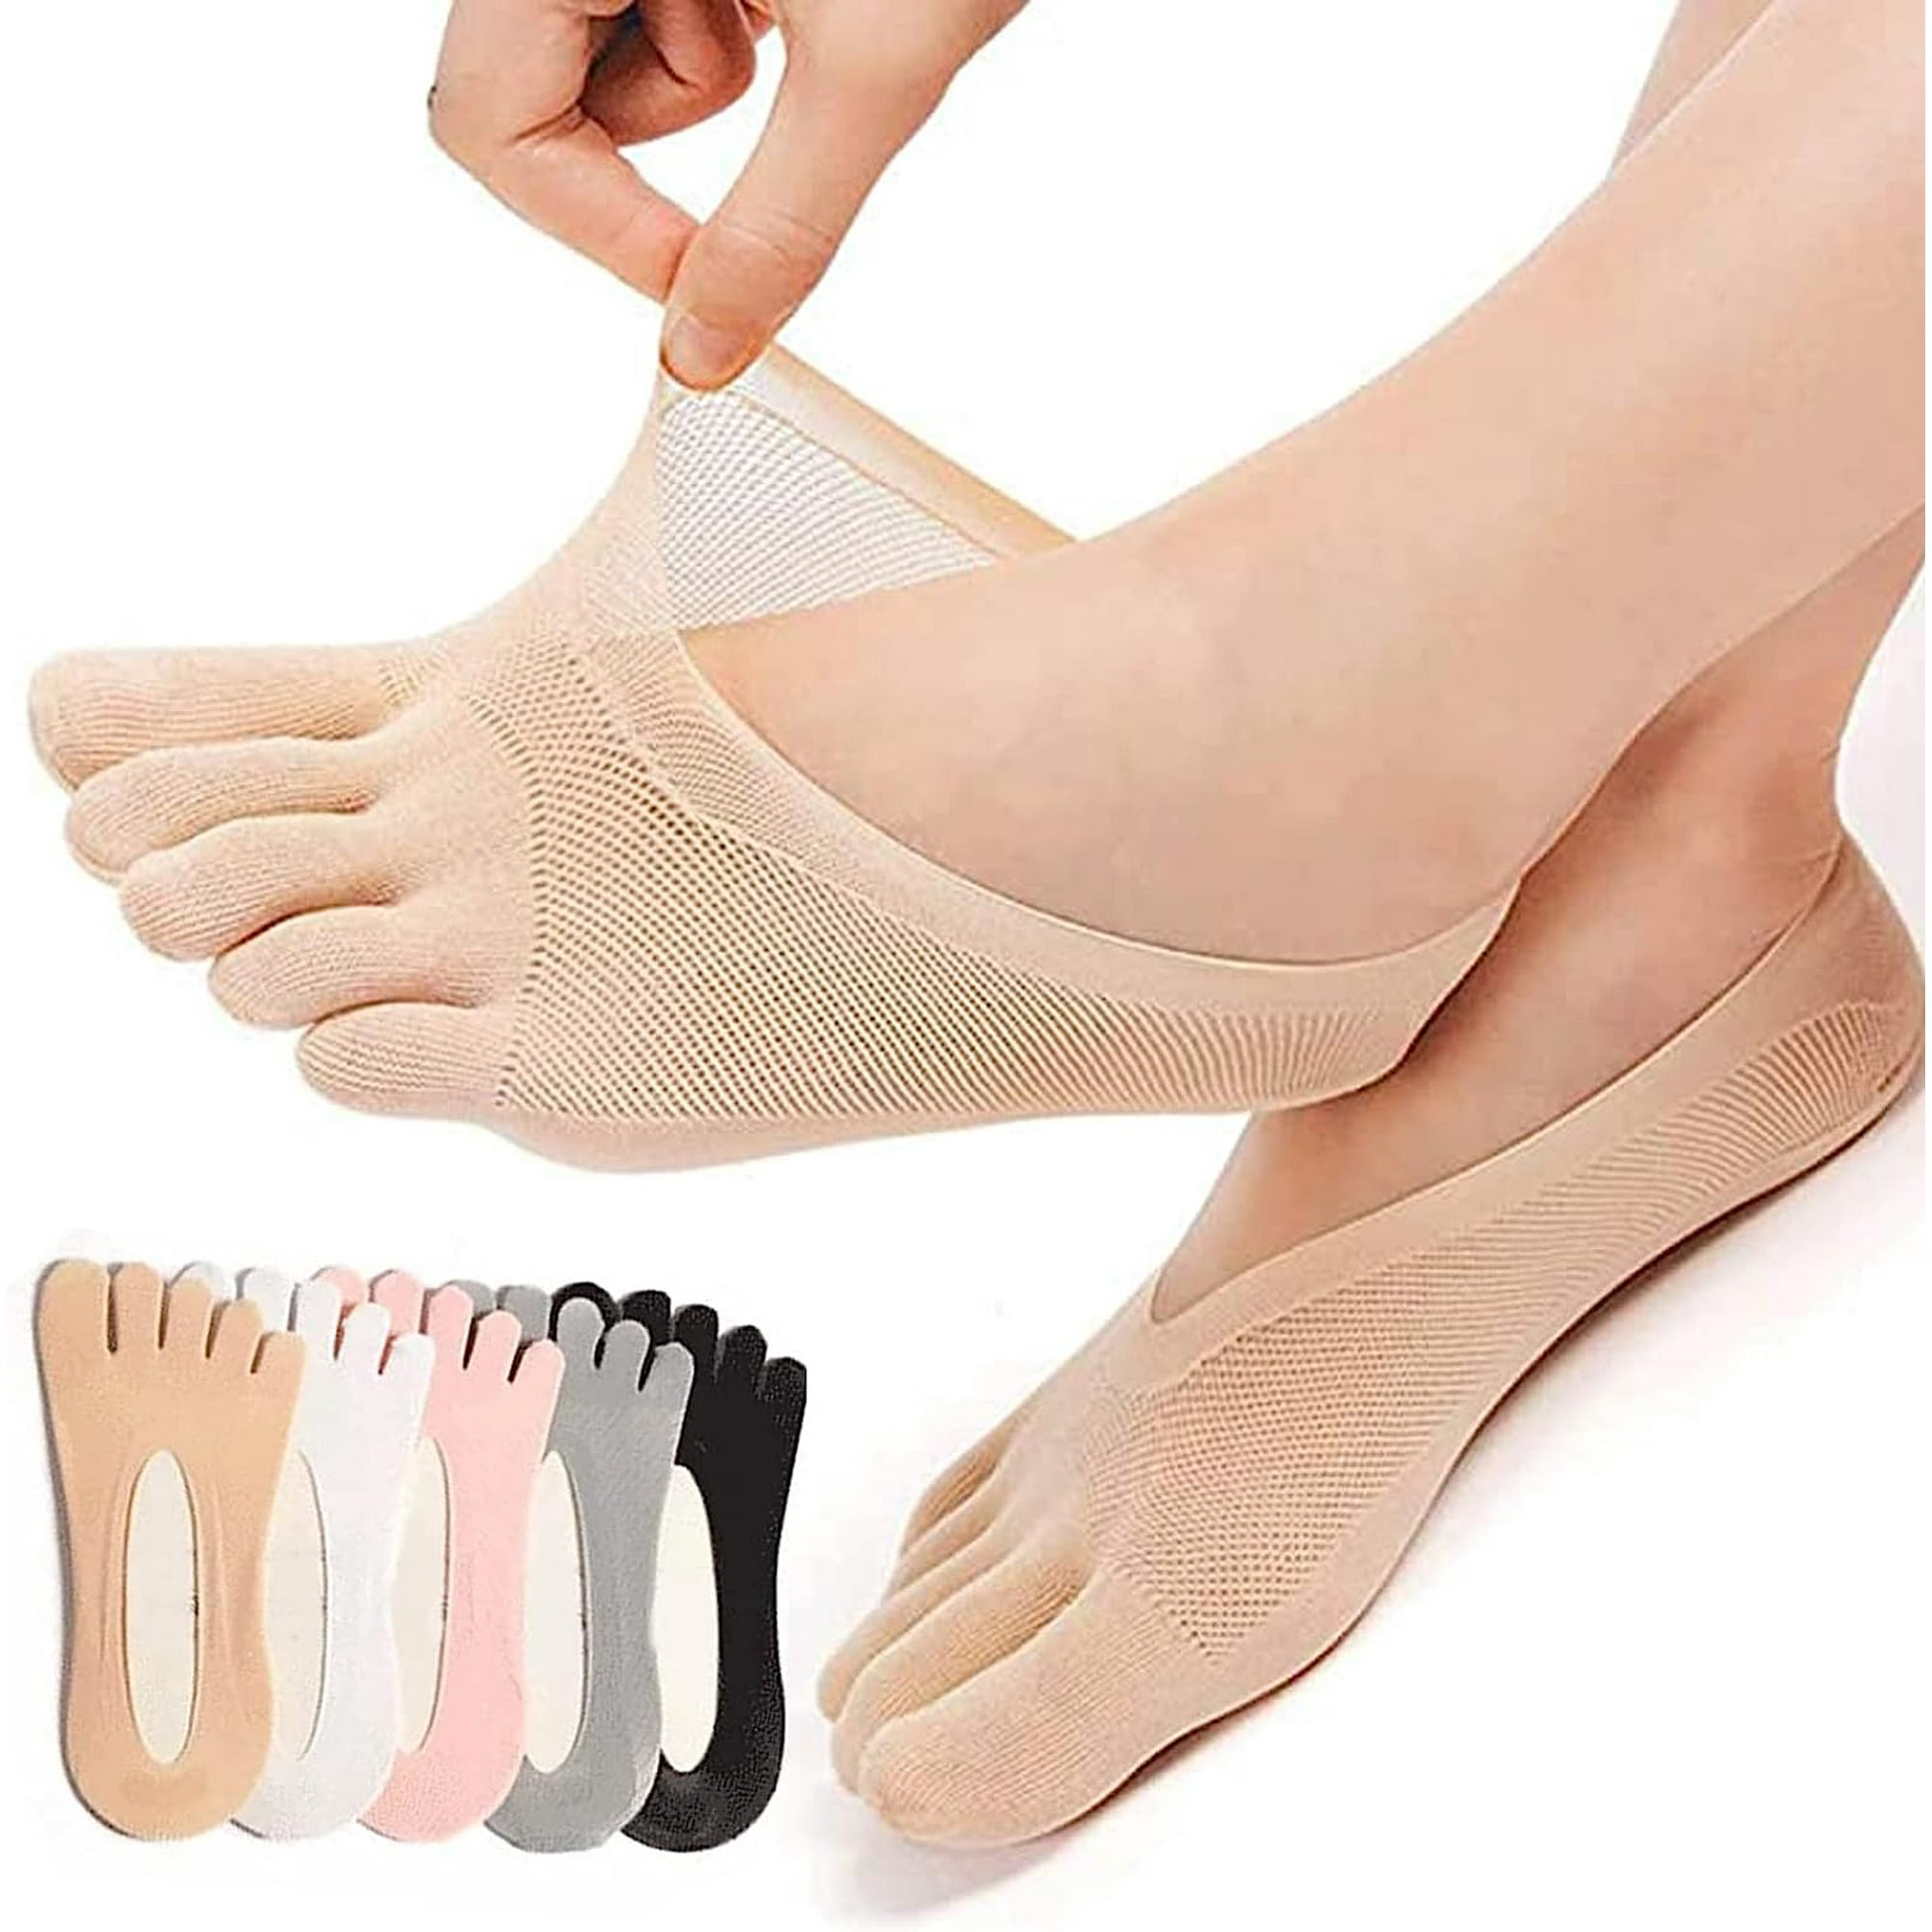 12 pares de calcetines de dedo de corte bajo para hombre, calcetines de  dedo de algodón transpirables calcetines separadores de dedos calcetines